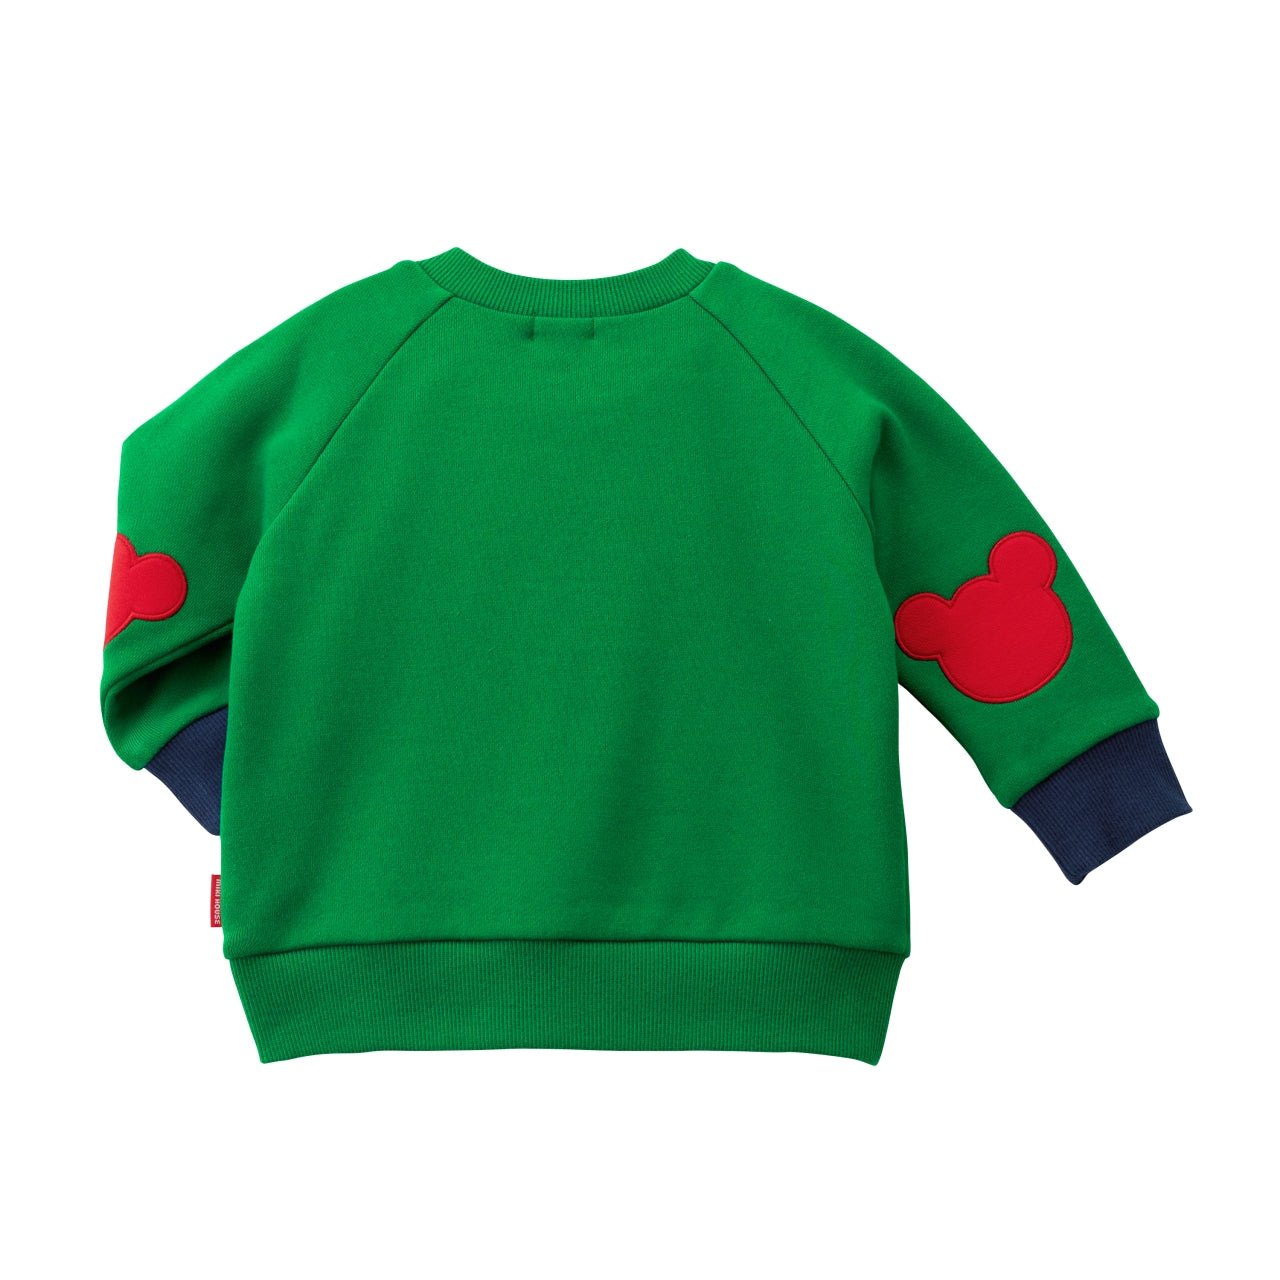 Pucci-licious Sweatshirt - 10-5610-579-07-80